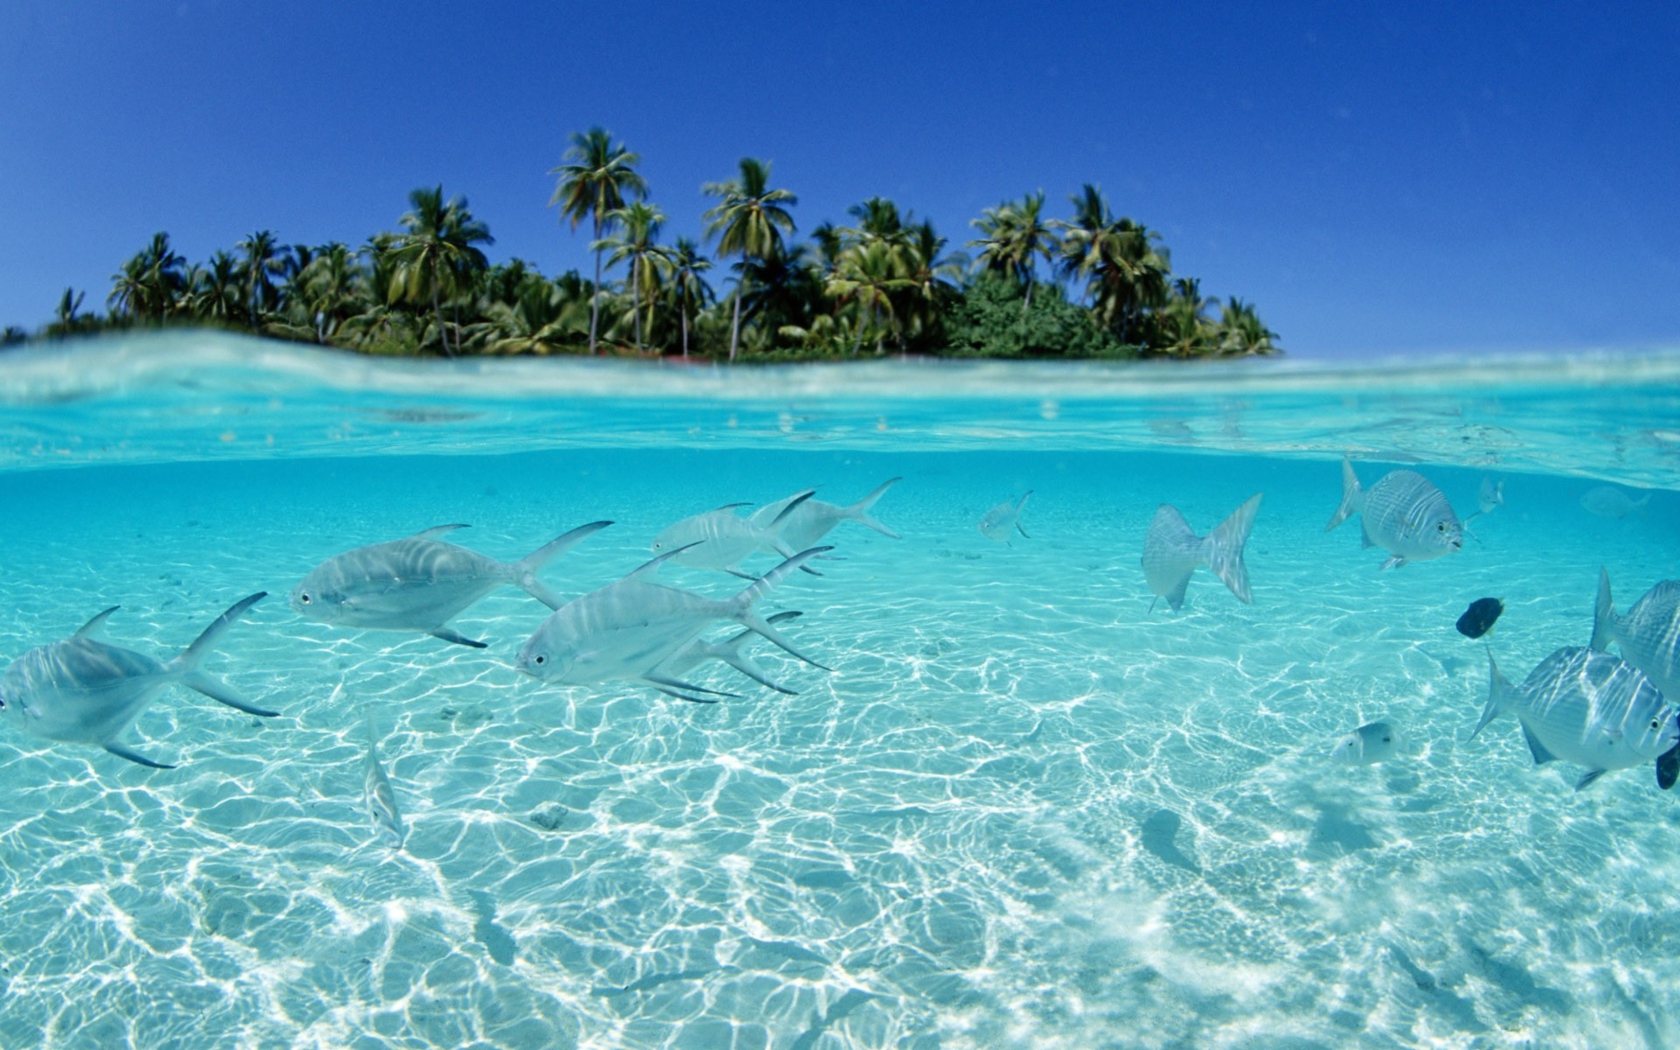 Обои Tropical Island And Fish In Blue Sea 1680x1050